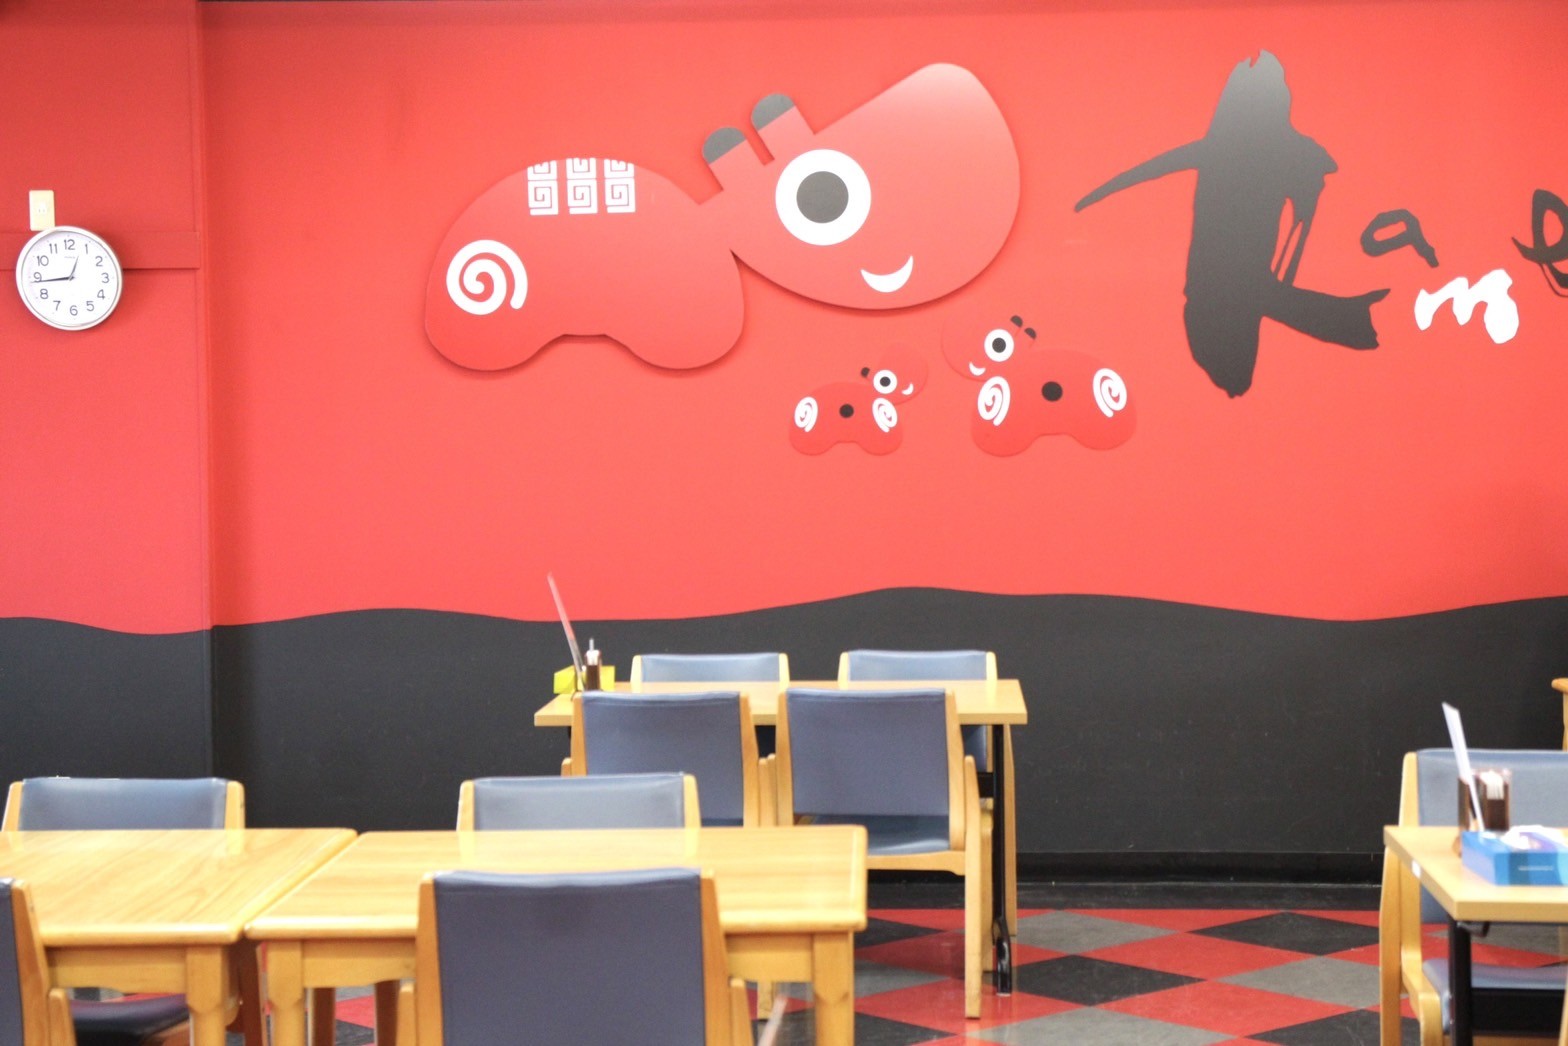 用餐空間也是喜氣洋洋的紅色搭配吉祥物紅牛，很具童趣感。